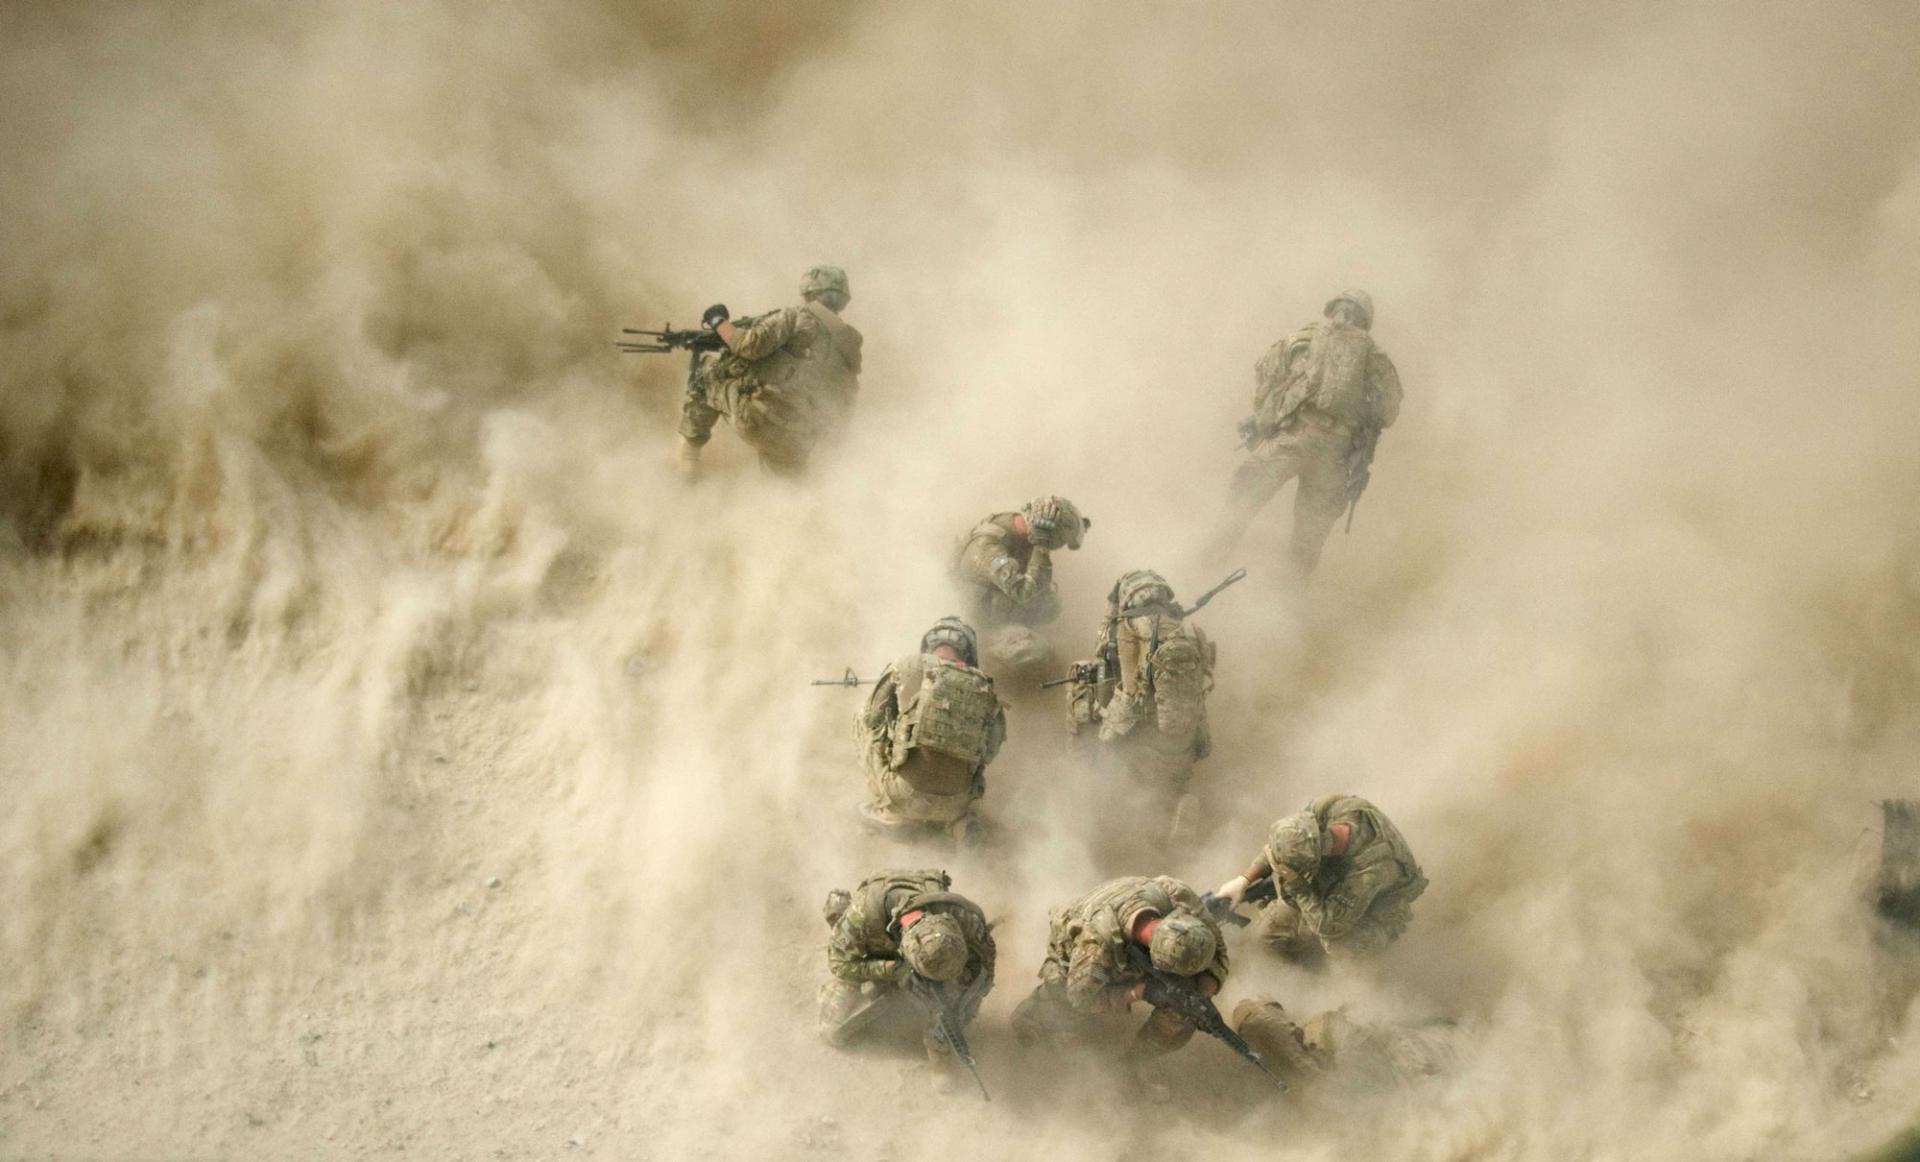 القوات الأميركية في أفغانستان